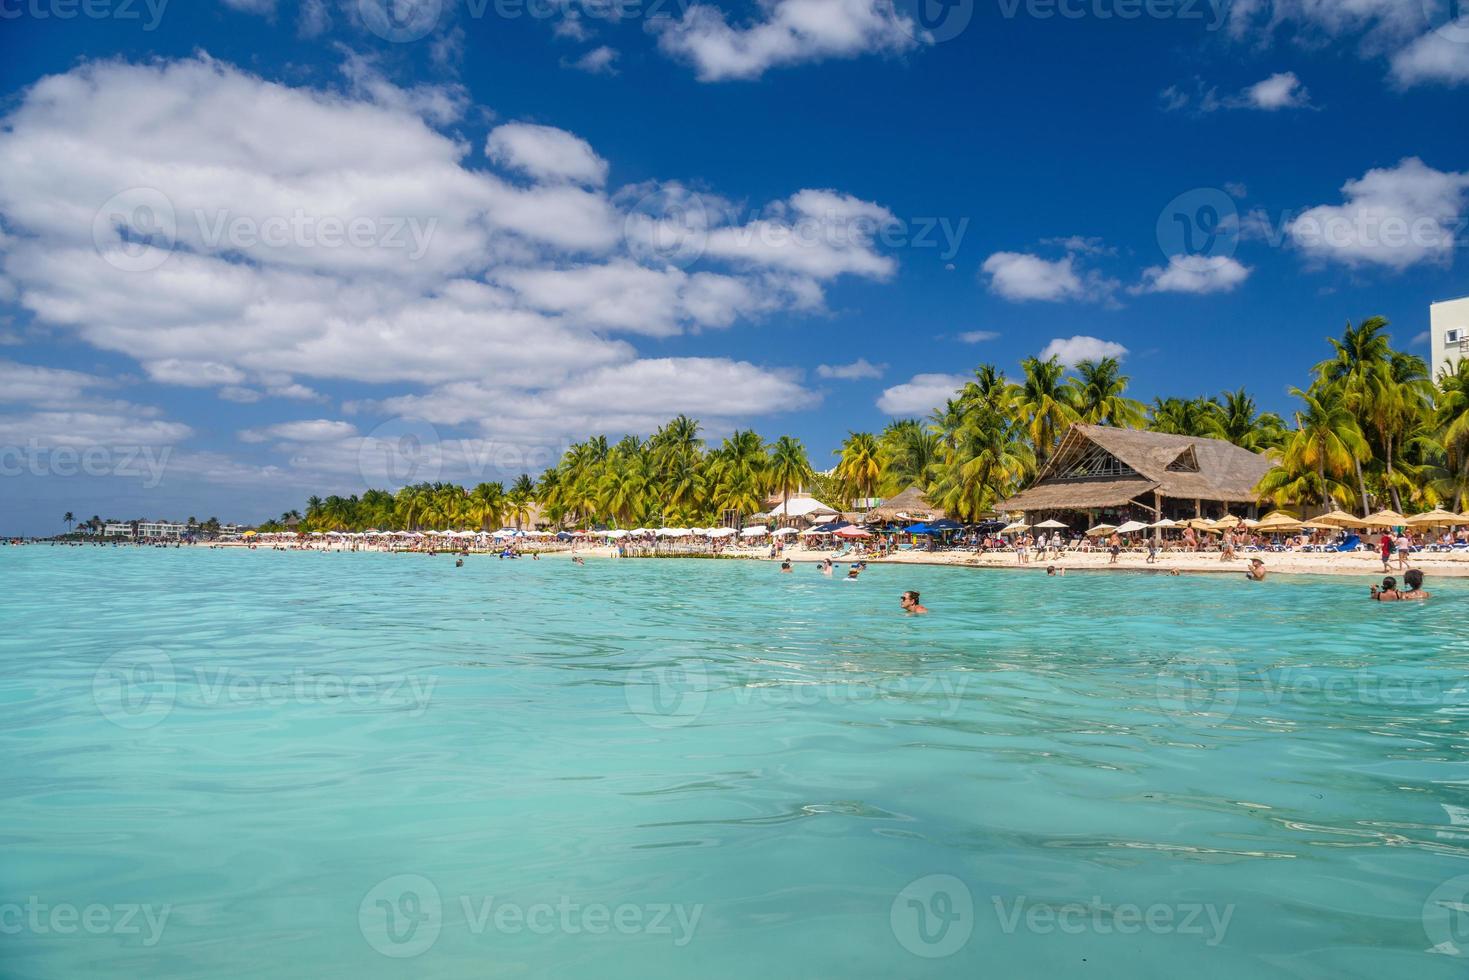 personnes nageant près de la plage de sable blanc avec parasols, bar de bungalows et palmiers cocos, mer des caraïbes turquoise, île d'isla mujeres, mer des caraïbes, cancun, yucatan, mexique photo